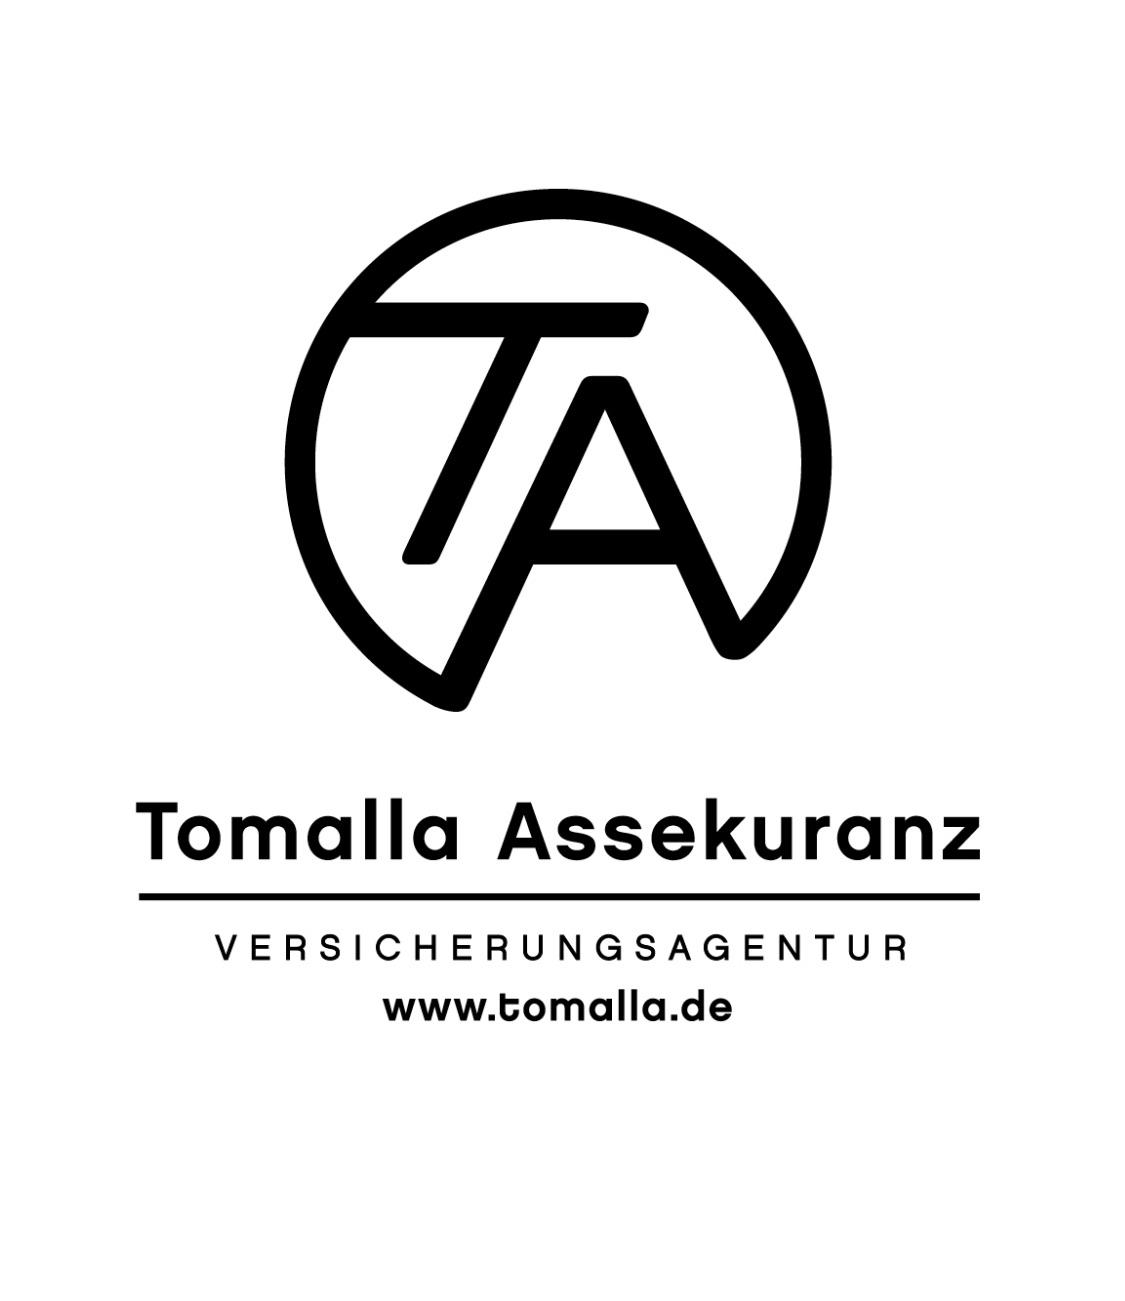 Tomalla Assekuranz Versicherungsagentur in Königs Wusterhausen - Brand